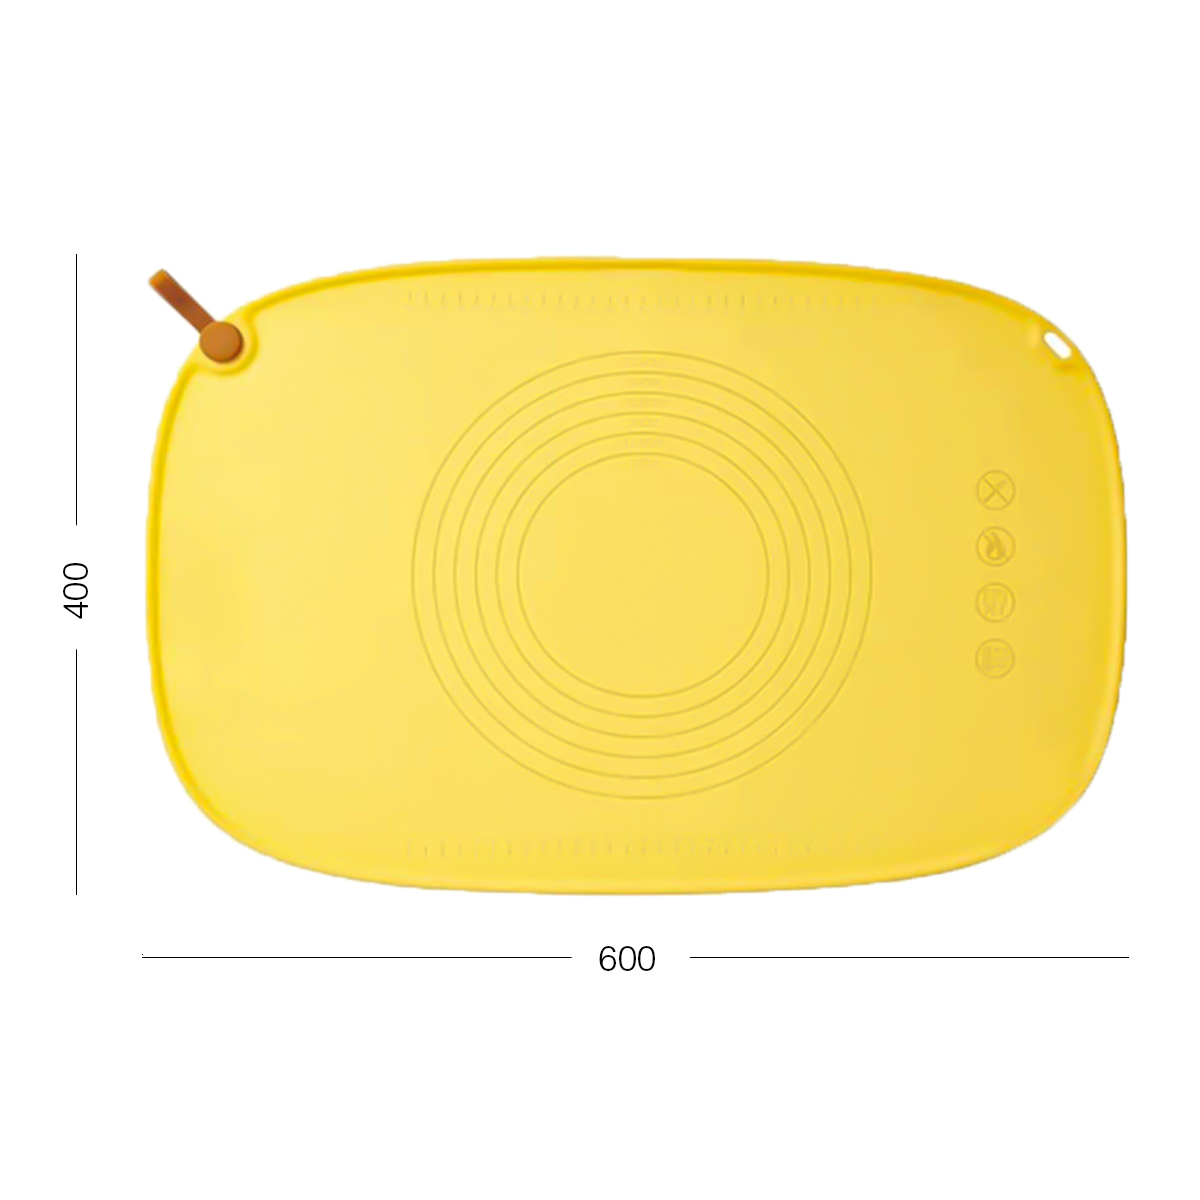 Килимок силіконовий для тіста МВМ My Home (MVM) 60x40 см жовтий (KP-84 YELLOW) - фото 2